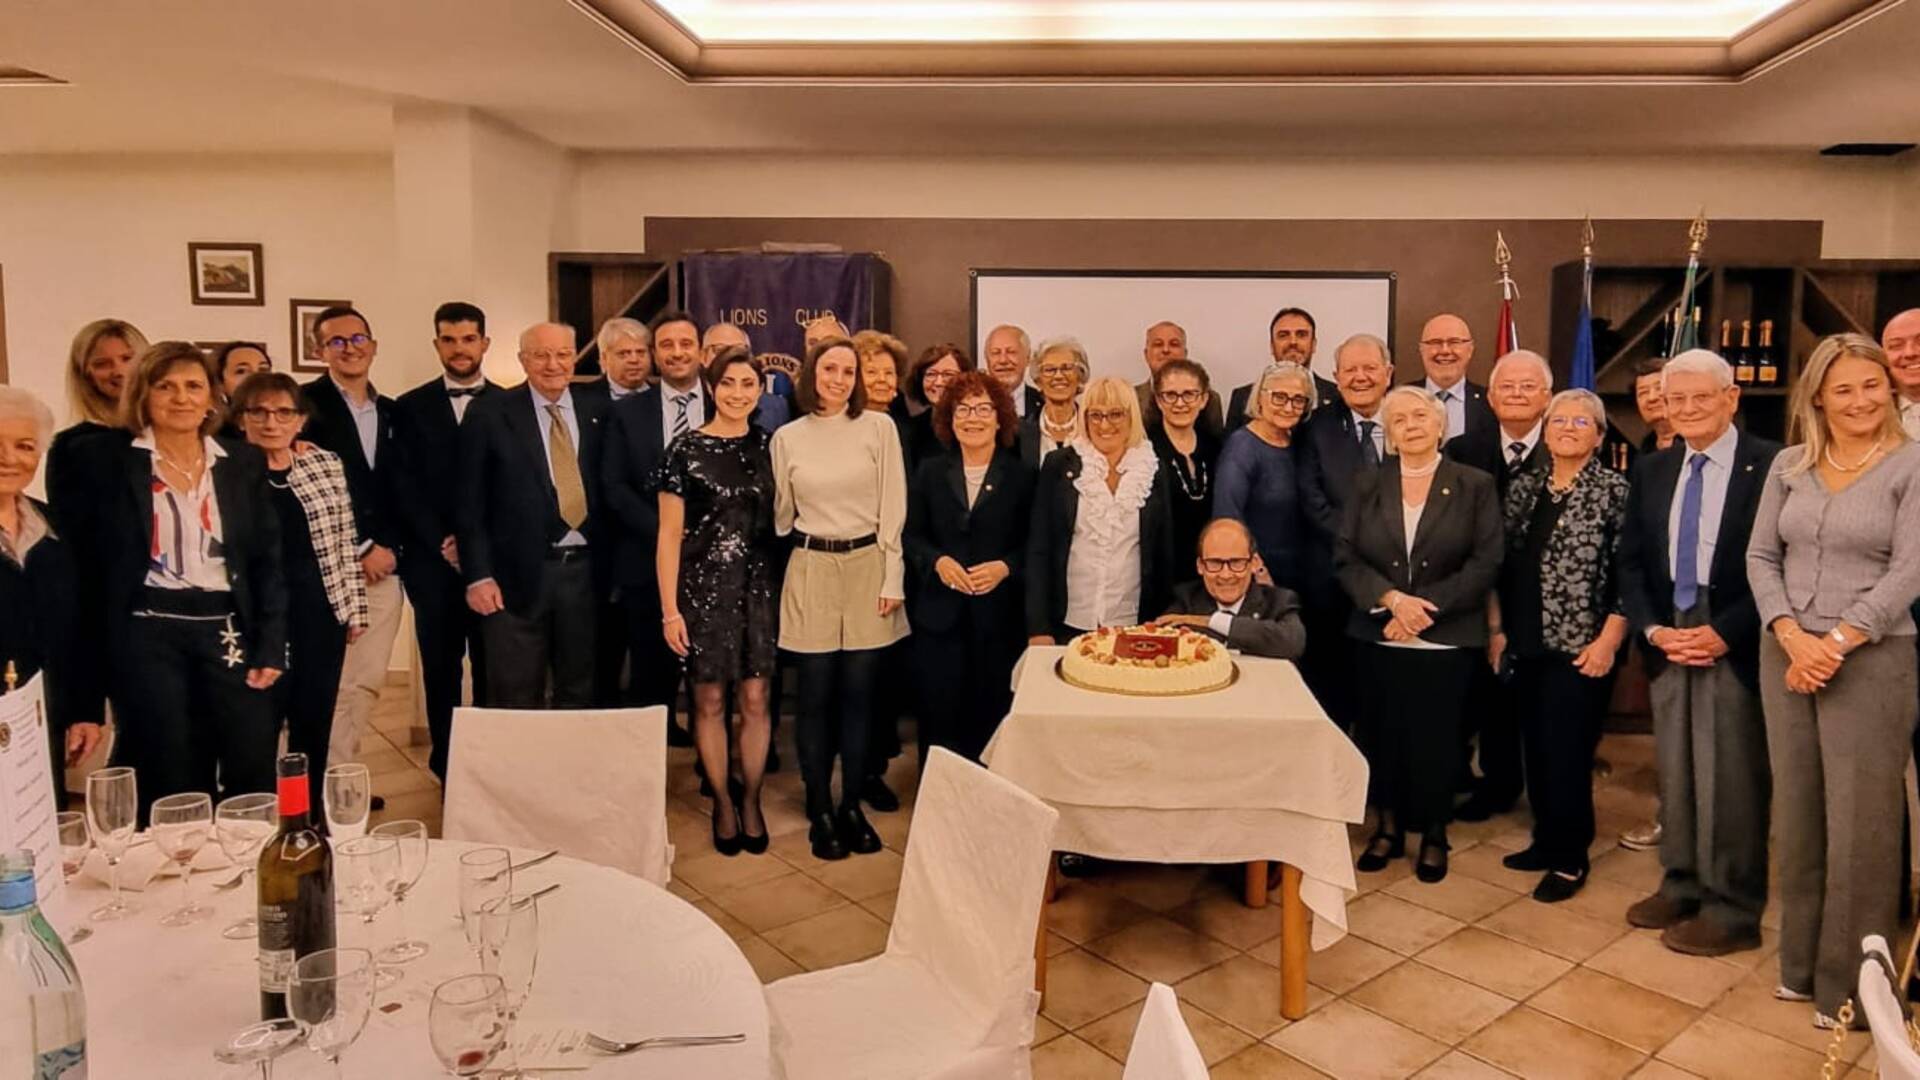 Lions Club Saronno Insubria spegne 19 candeline: un successo per la Charter Night